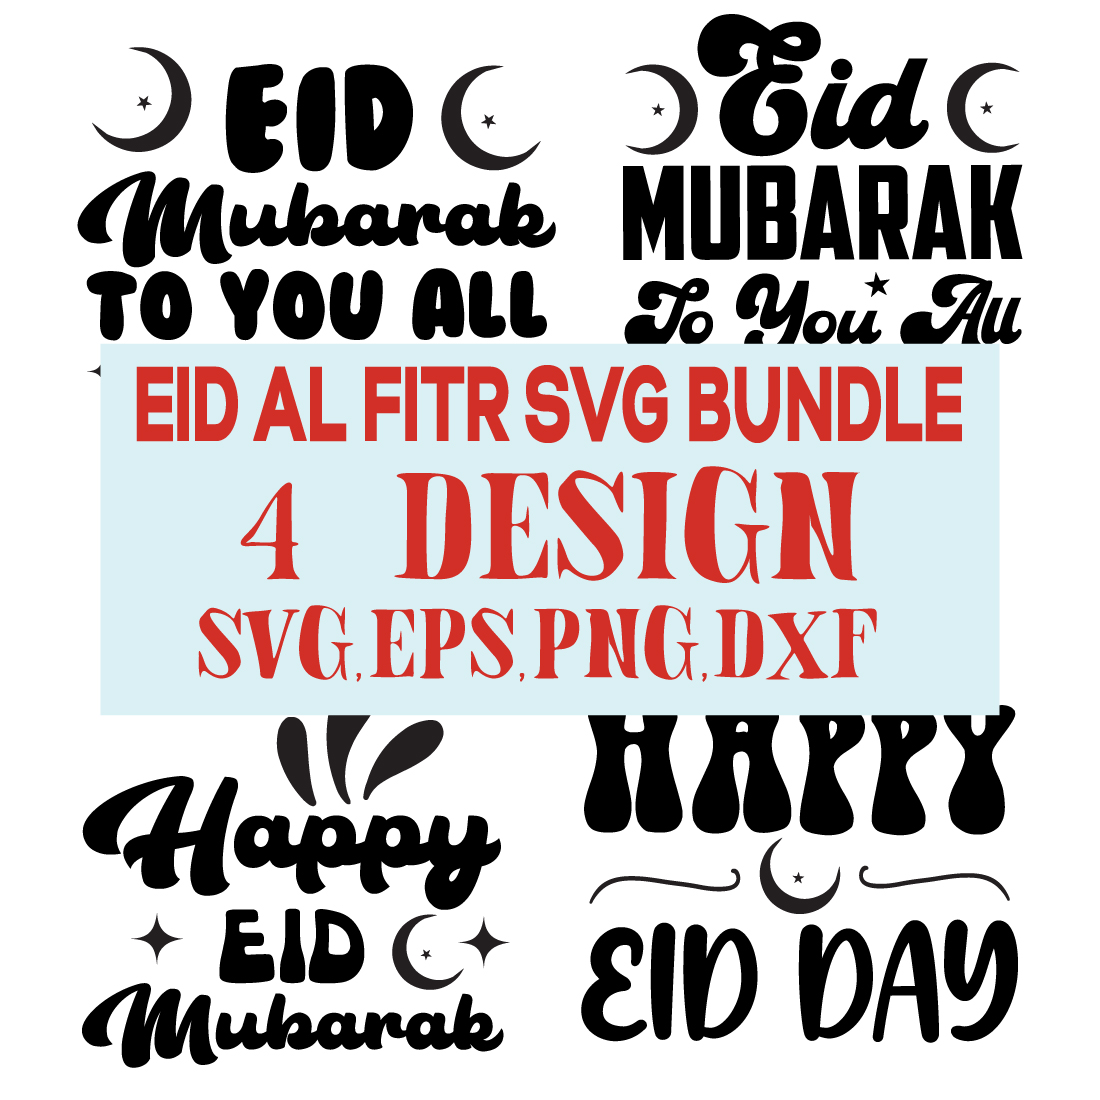 eid al fitr svg bundle preview image.